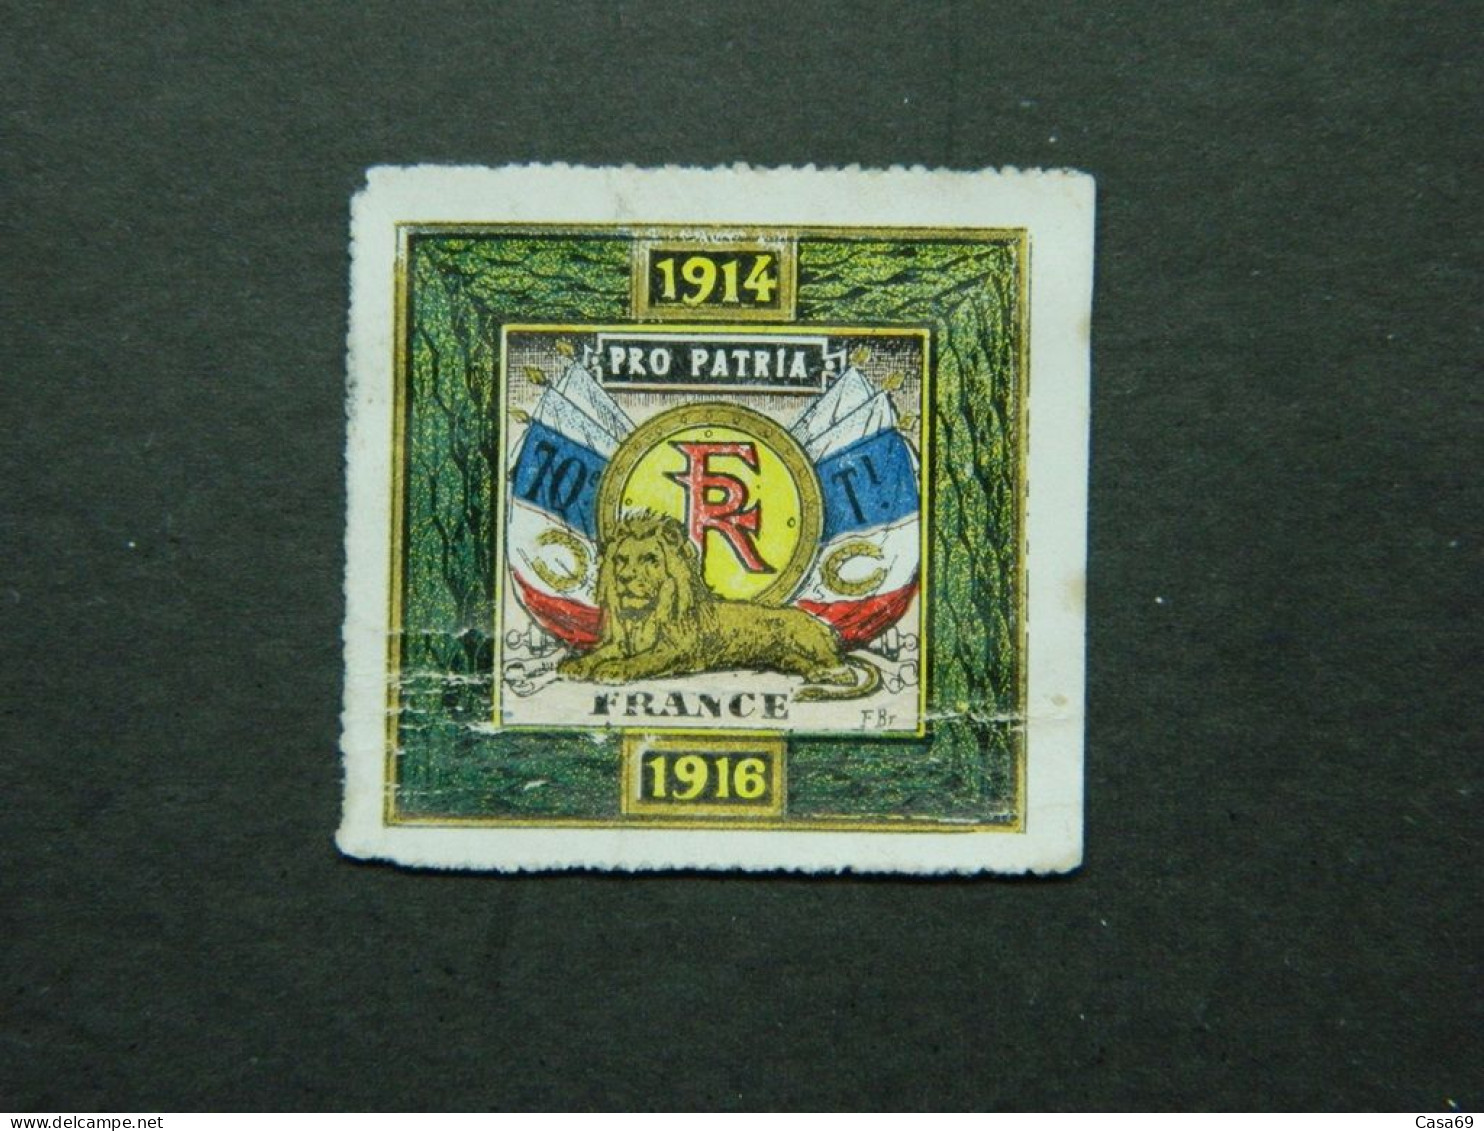 Vignette Militaire Delandre 70ème Bataillon Infanterie Territoriale 1914 1916 - Military Heritage